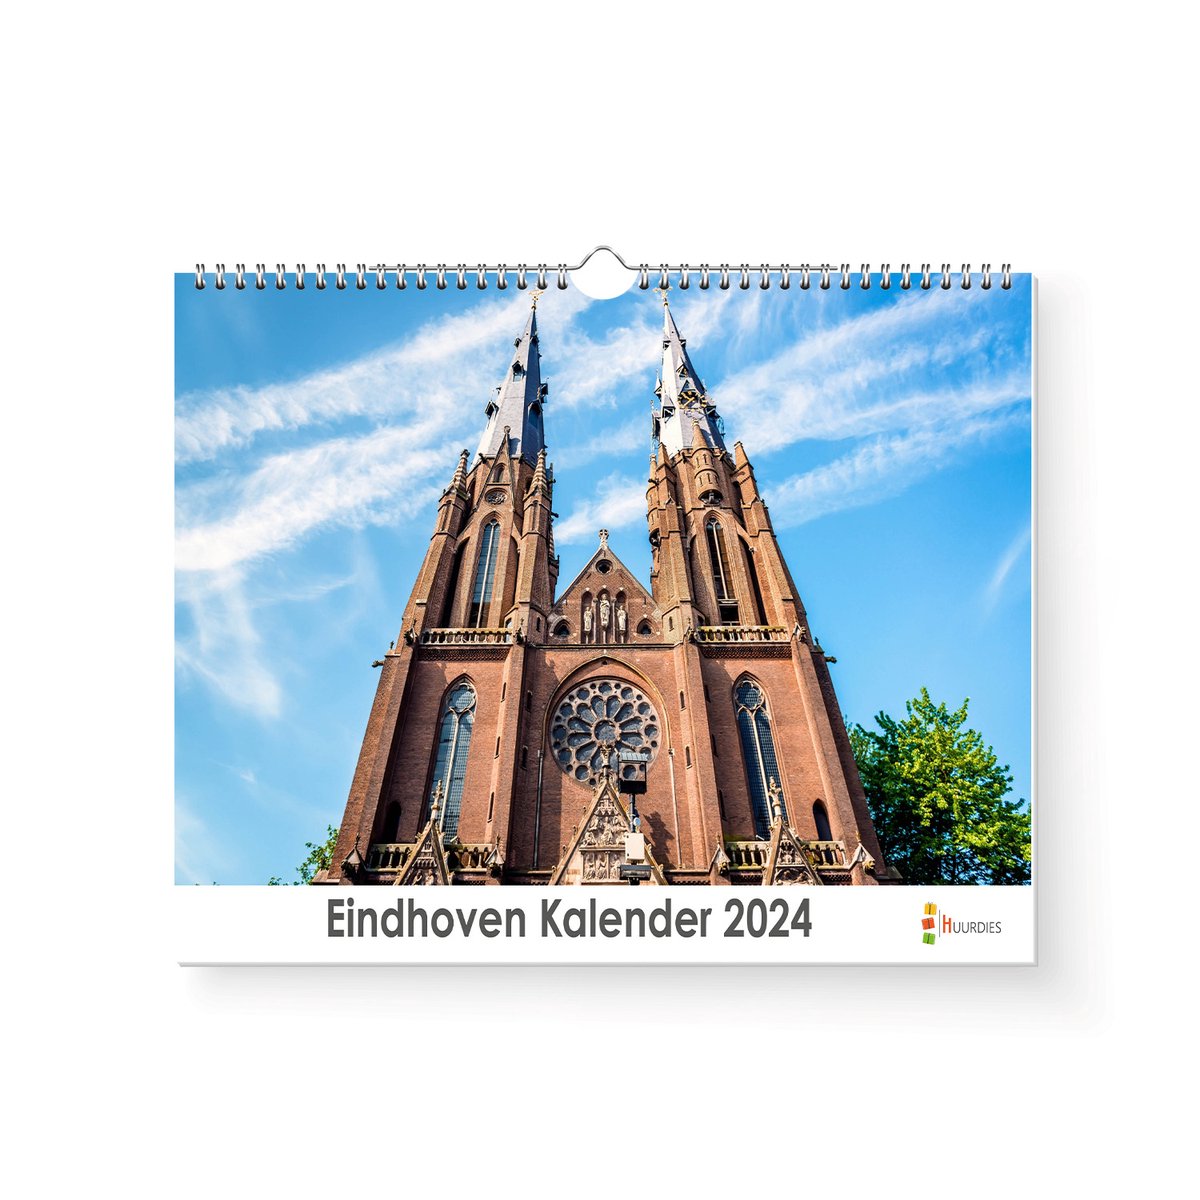 Huurdies - Eindhoven Kalender - Jaarkalender 2024 - 35x24 - 300gms